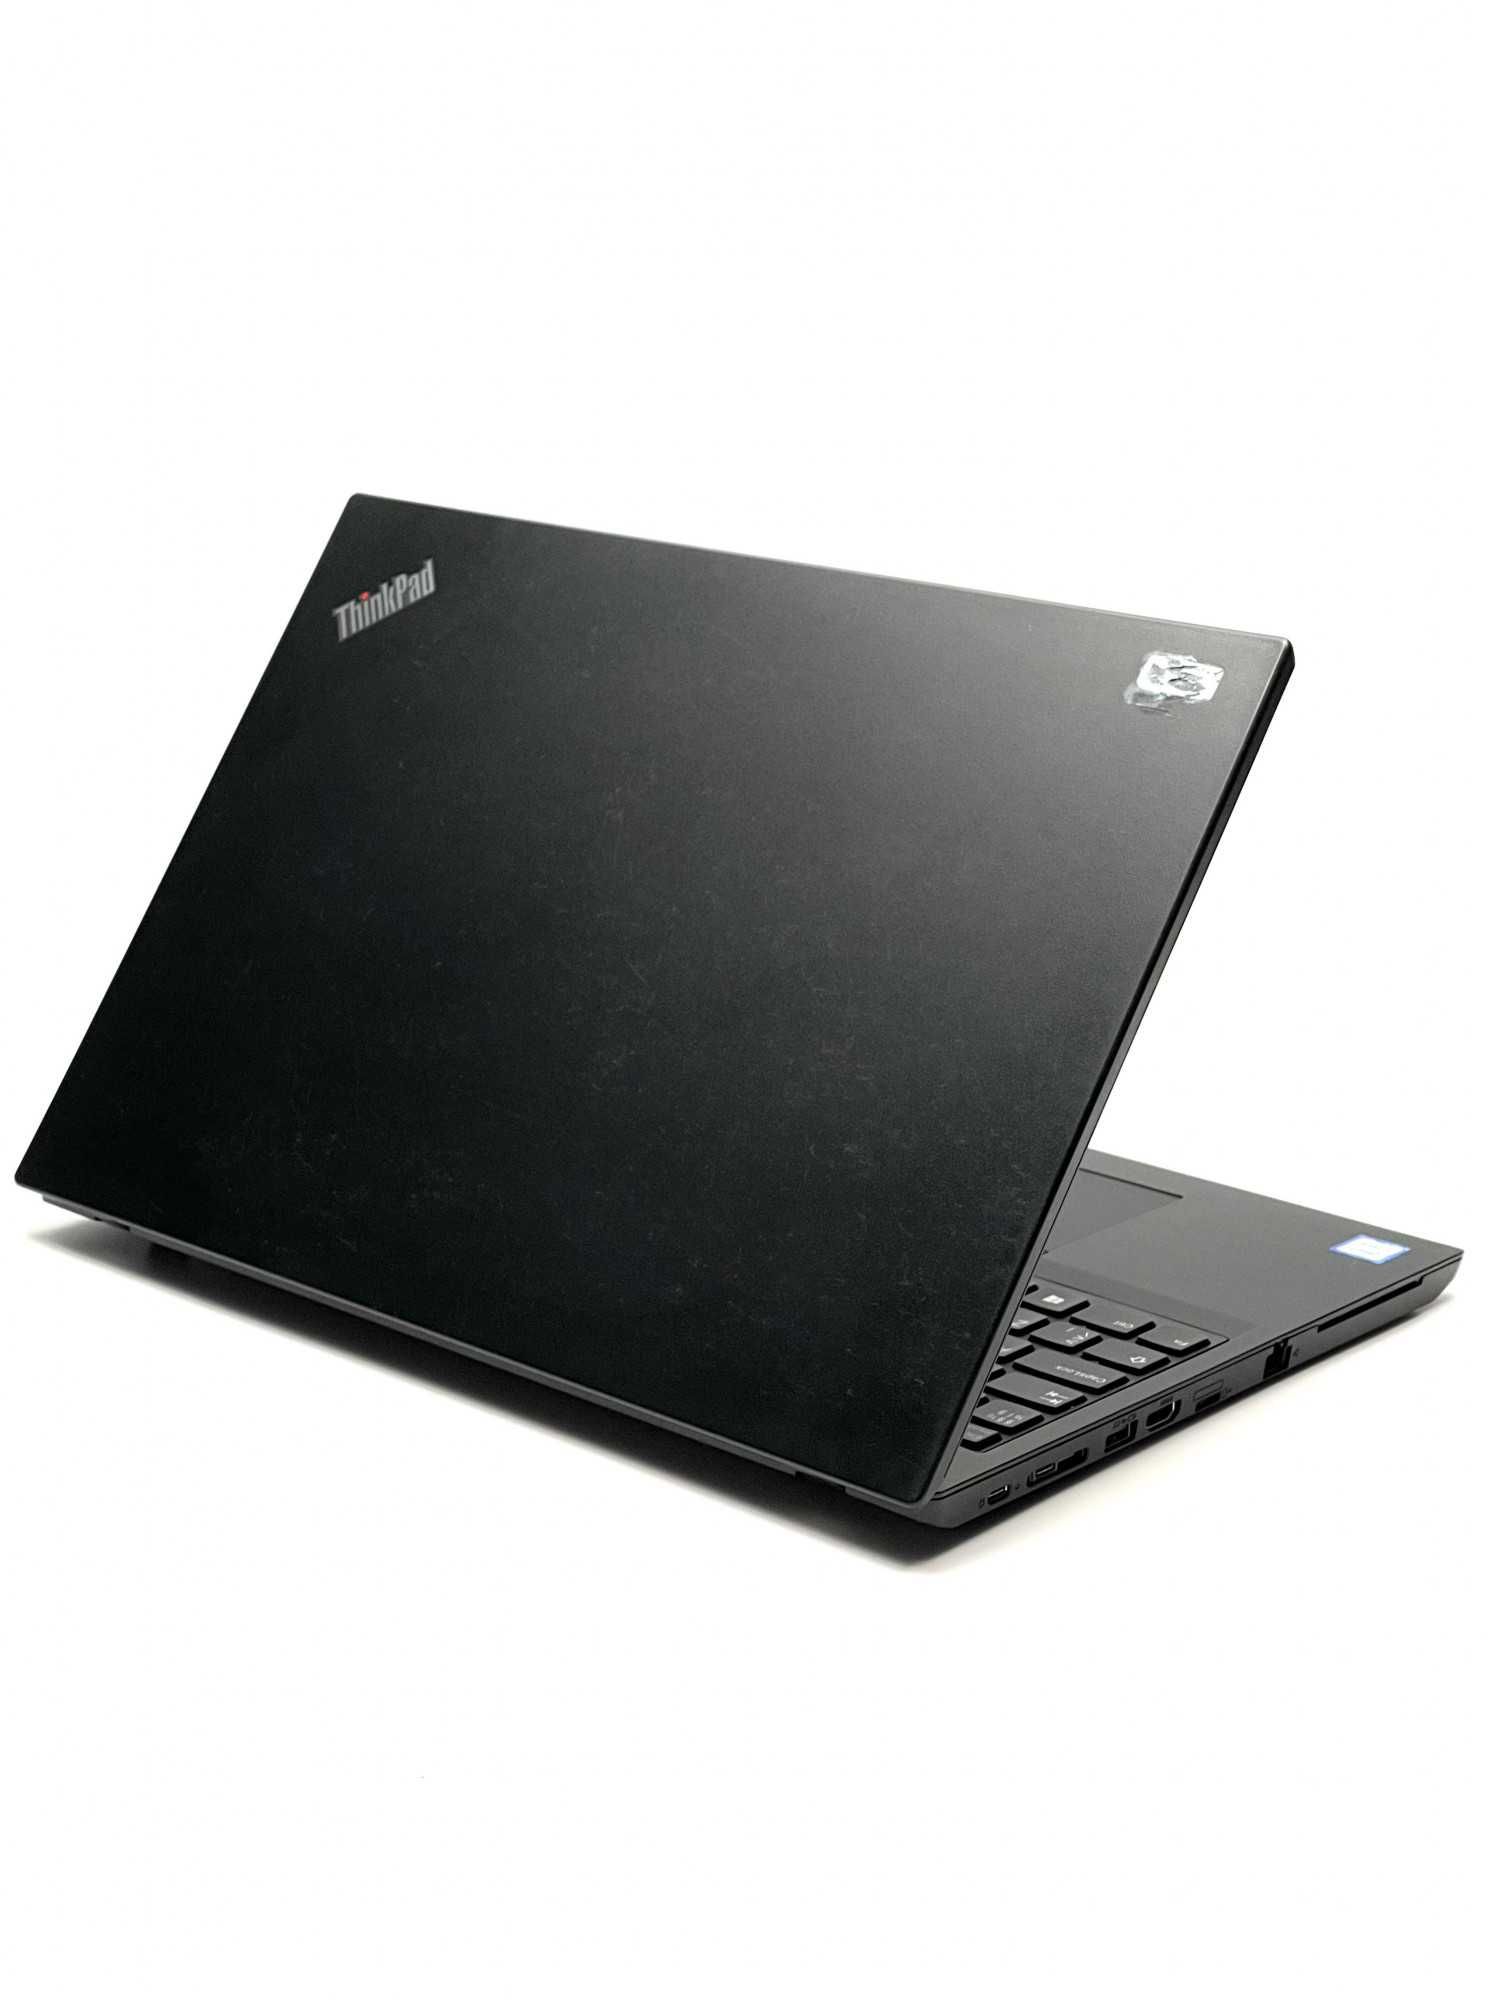 Lenovo ThinkPad L580 | 15.6" FHD IPS | i5-8250U 3,4 Ghz | 8 Gb | 256